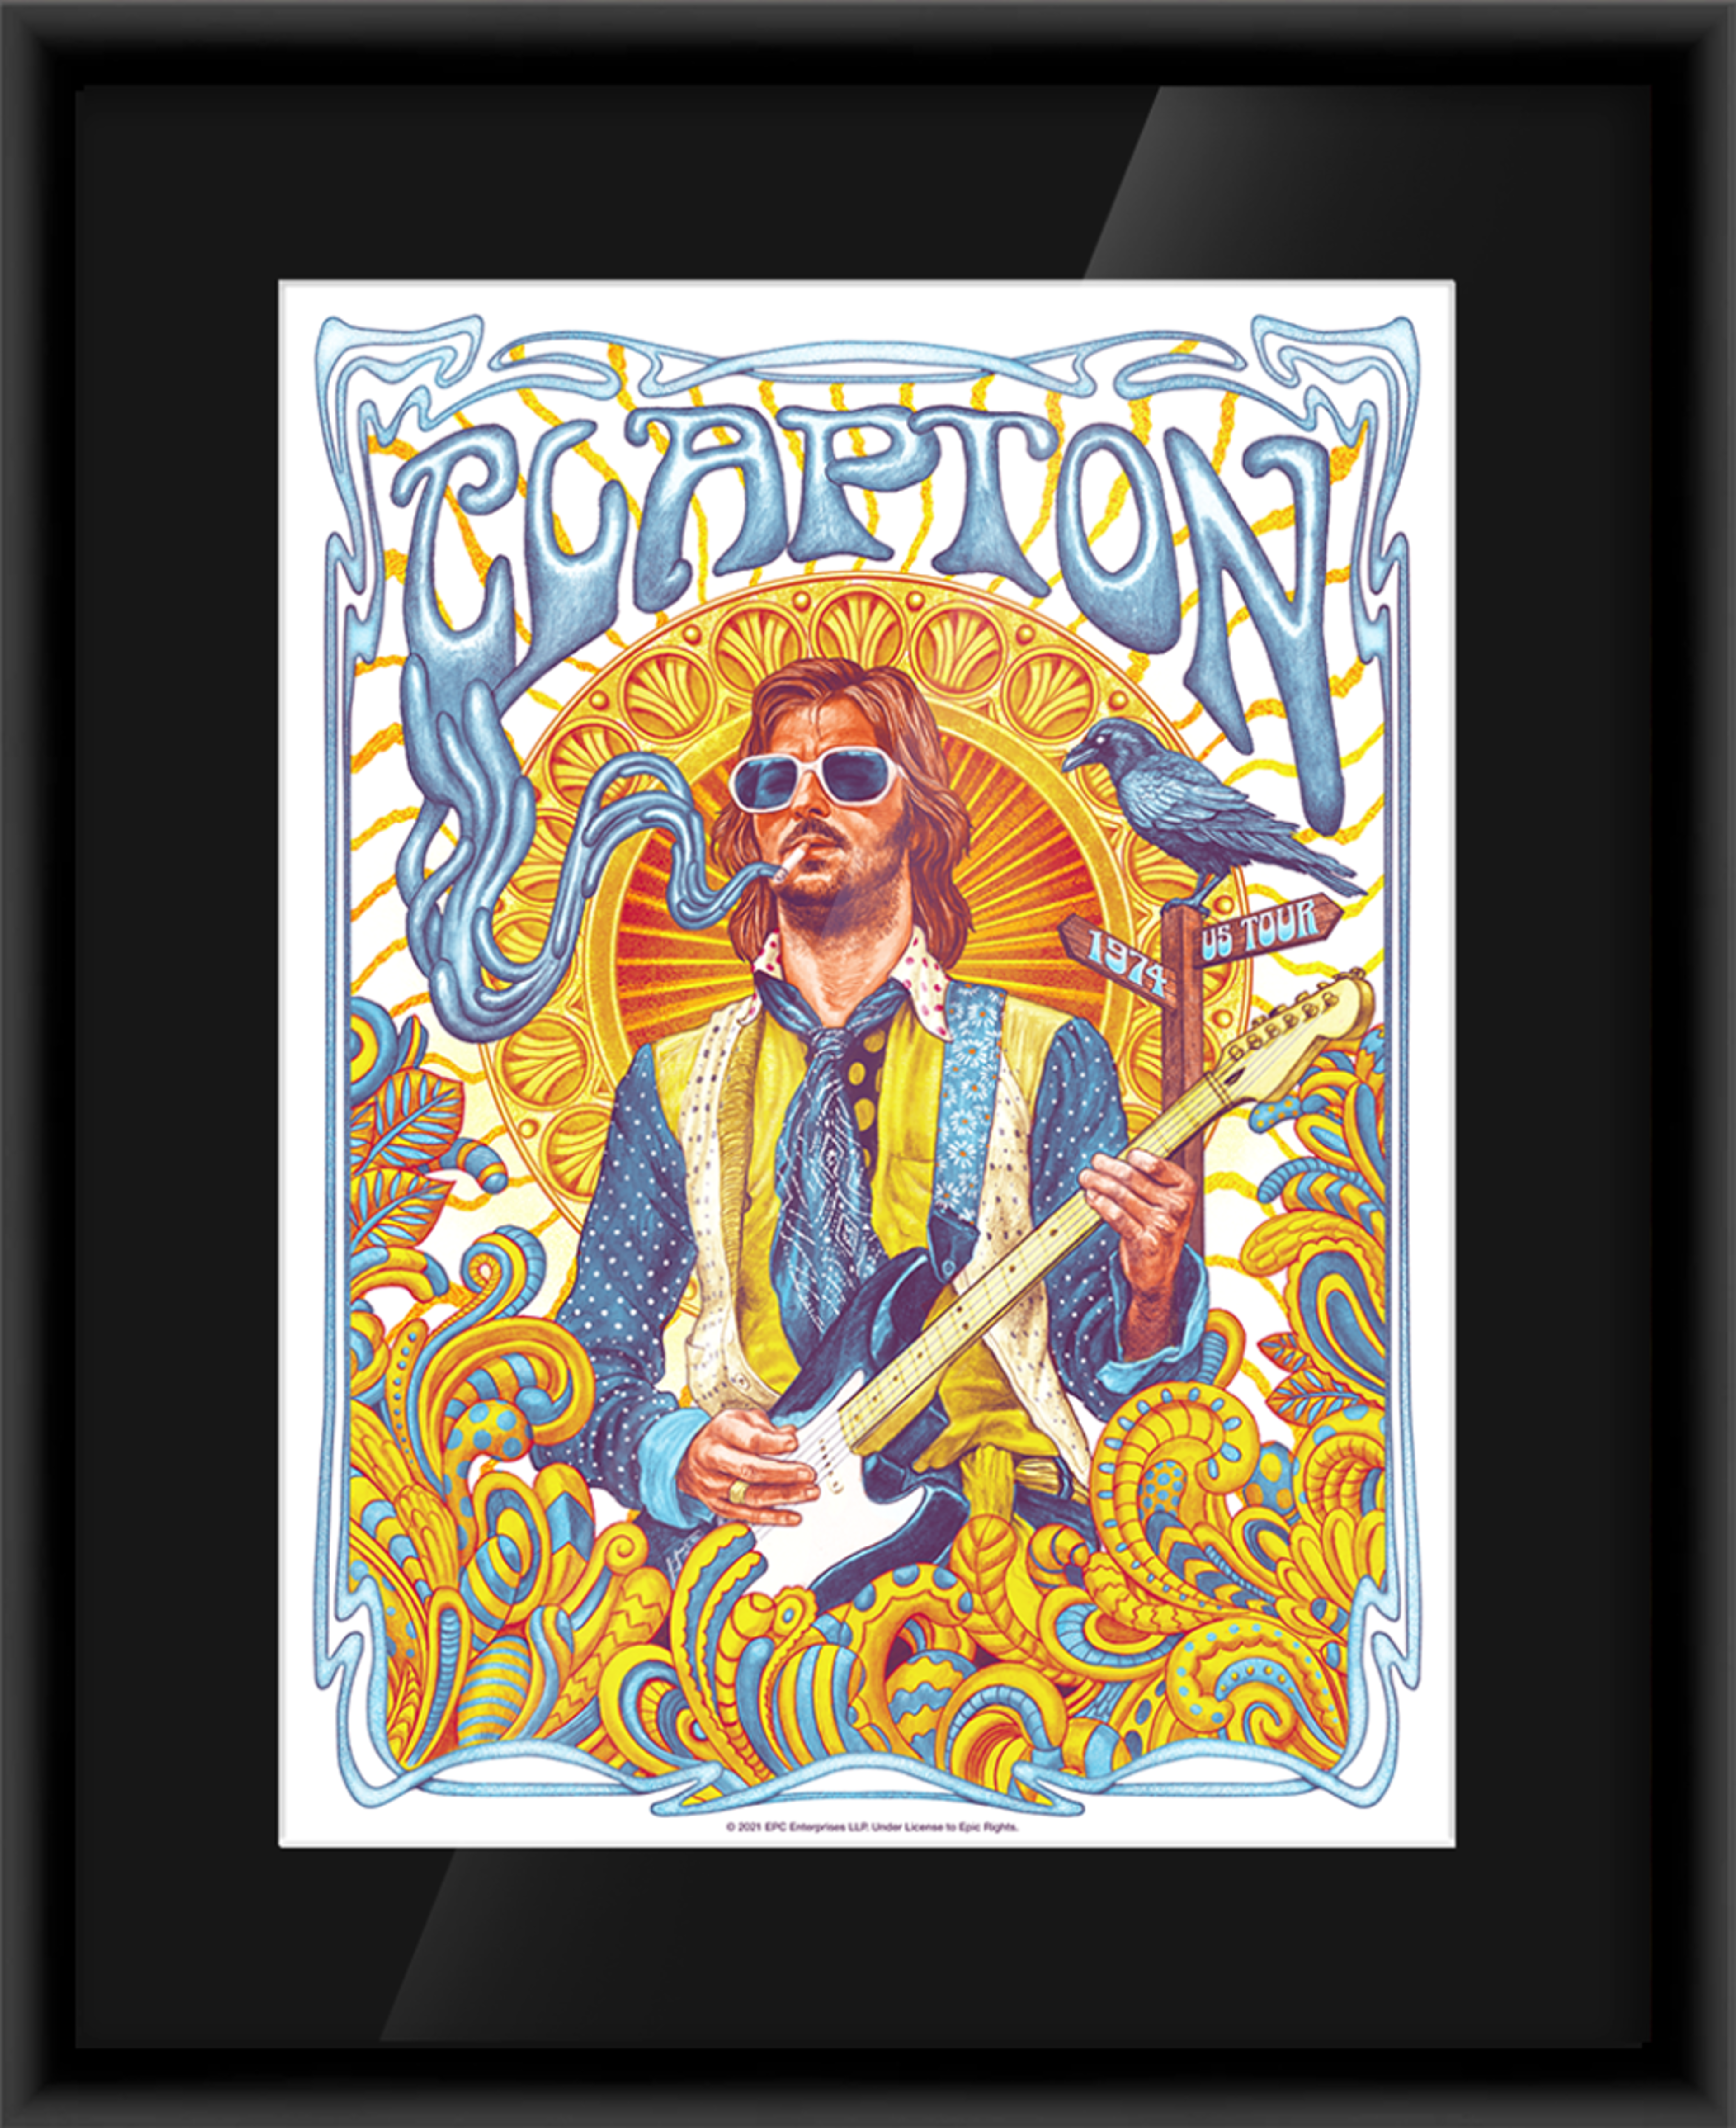 Alternate View 1 of Eric Clapton 1974 Tour